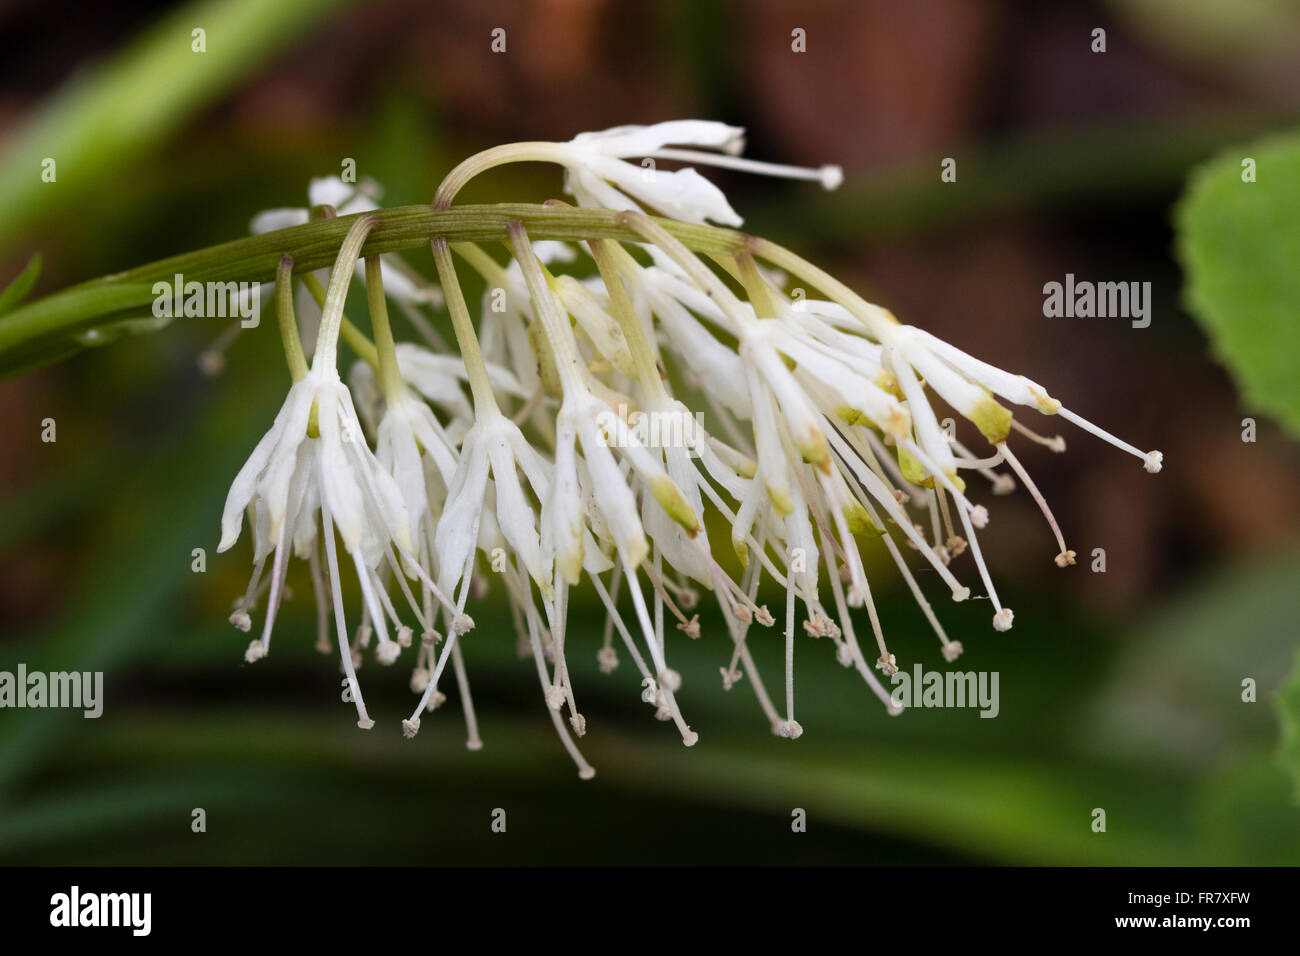 Wispy weißen Blüten von der frühen Frühling blühende immergrüne mehrjährige, Ypsilandra thibetica Stockfoto